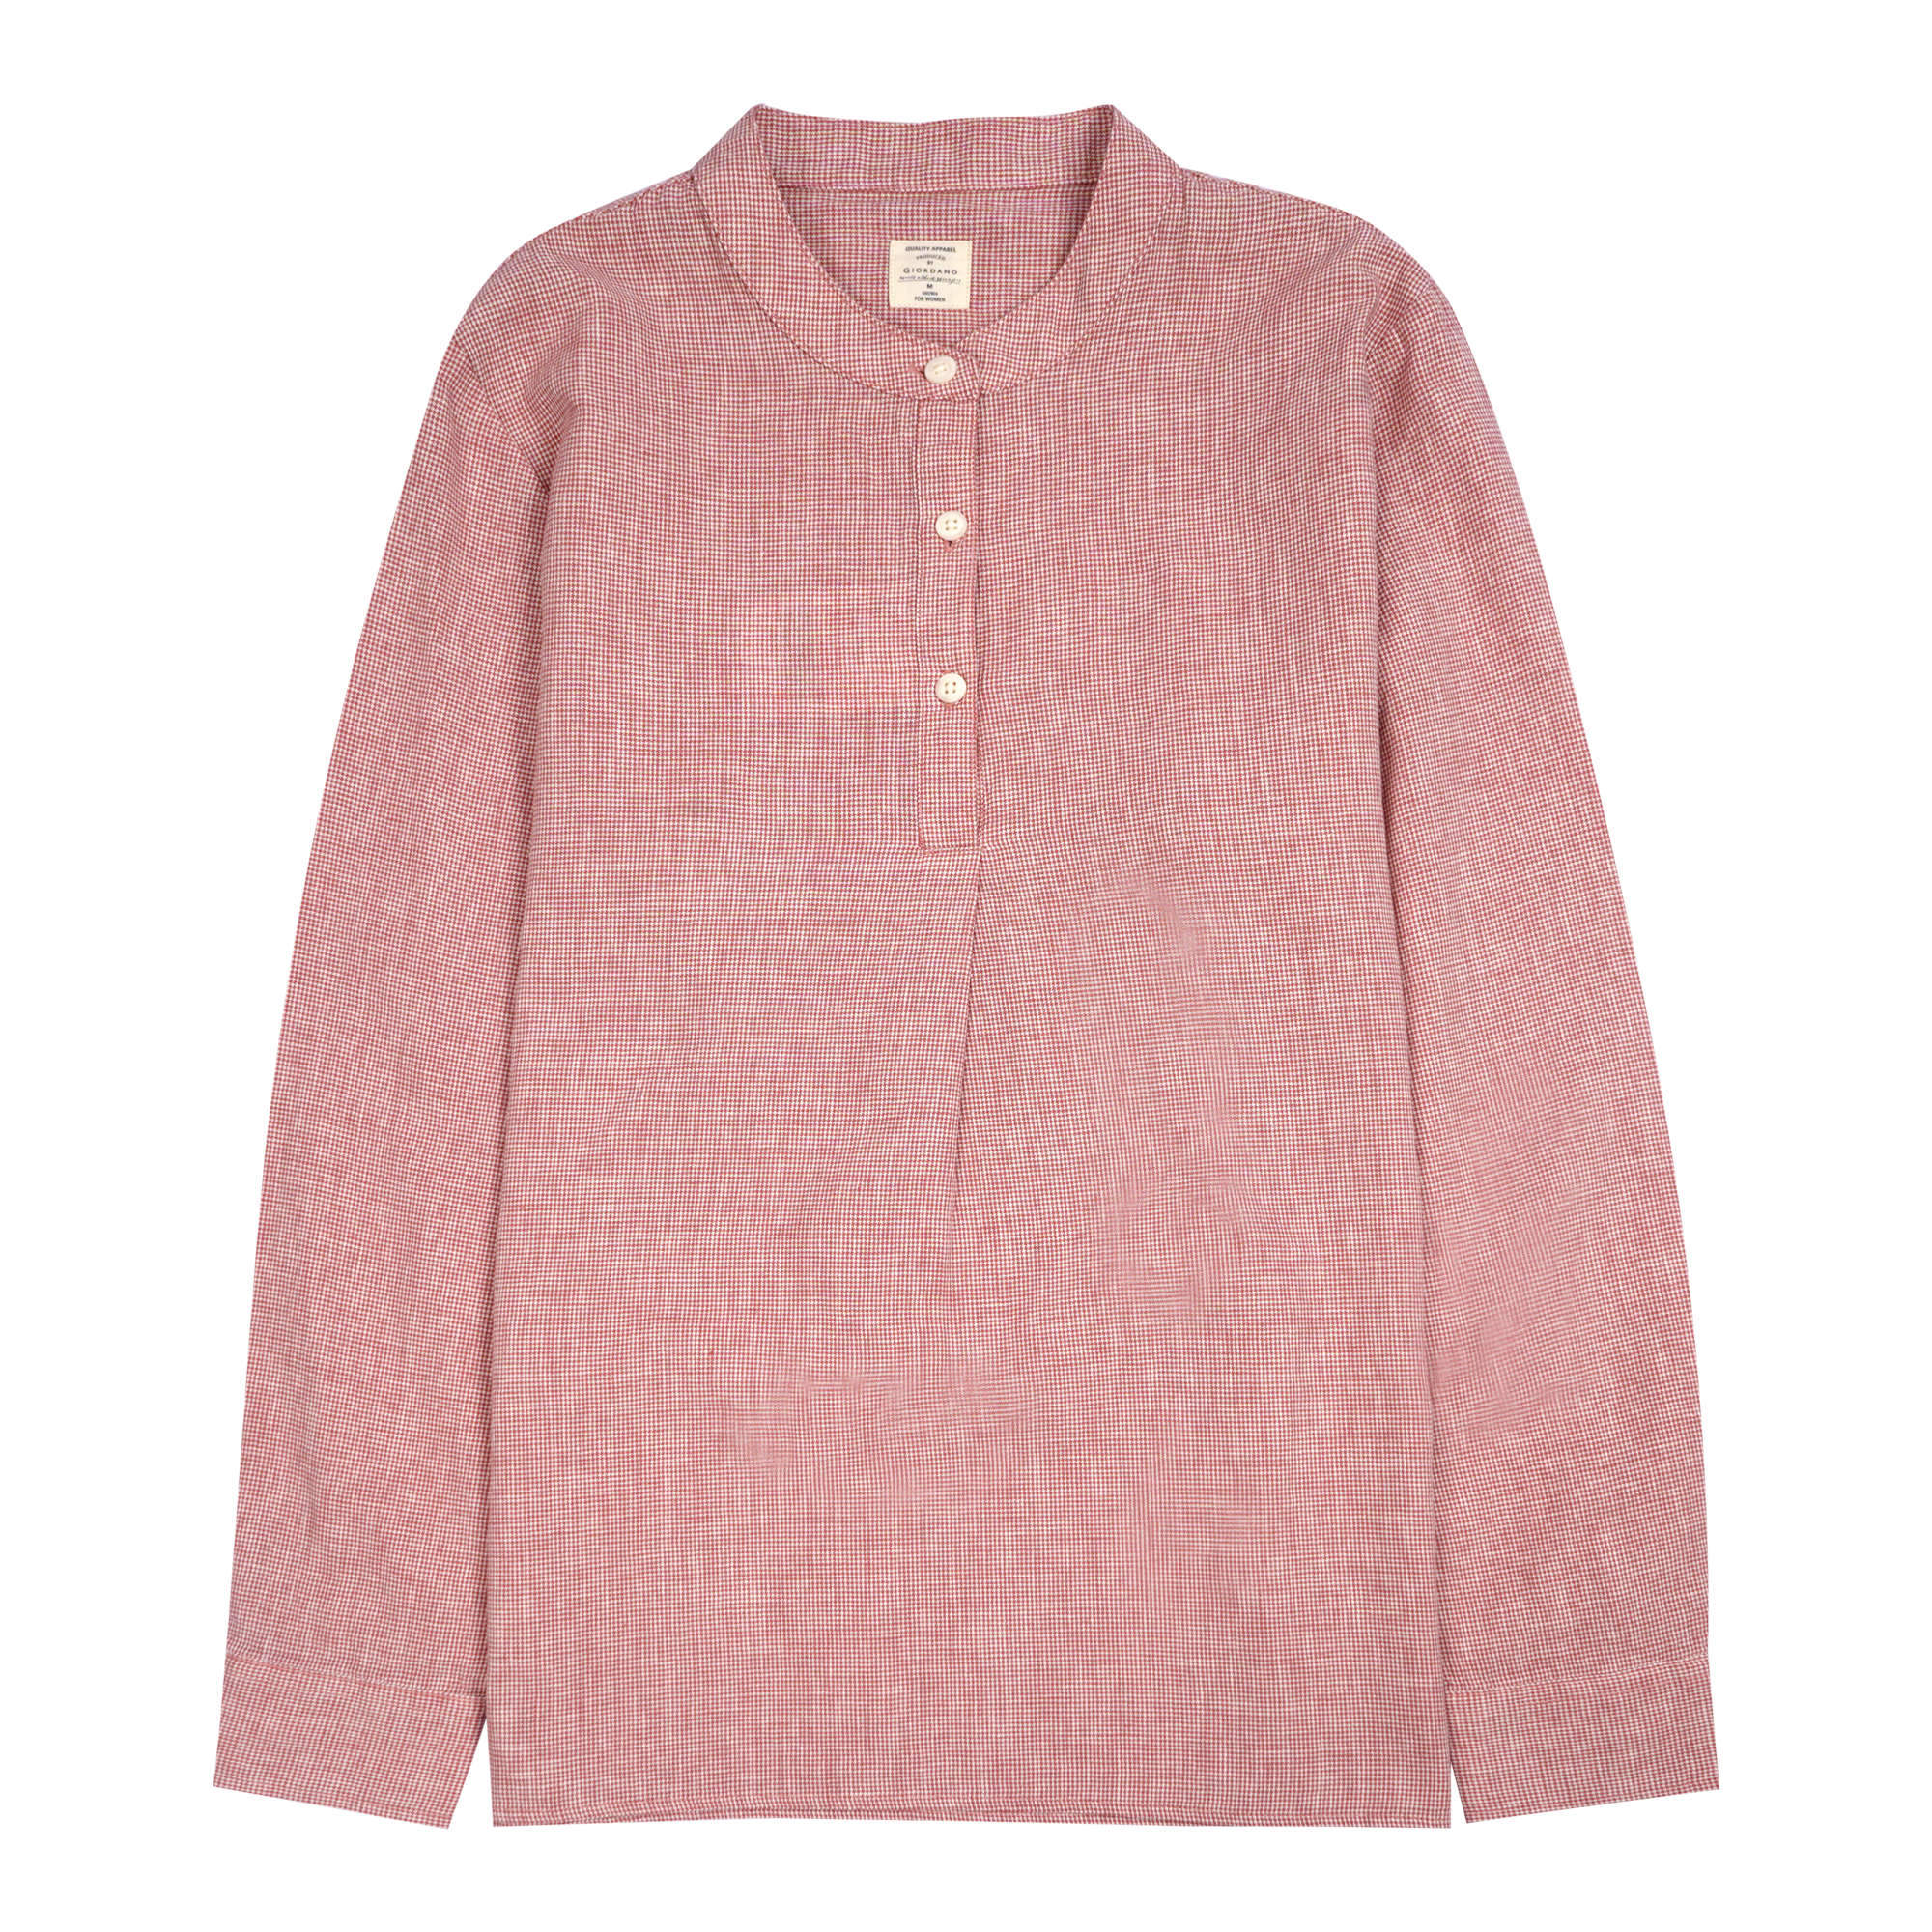 Women's Cotton Linen Comfort Fit Long Sleeve Shirt